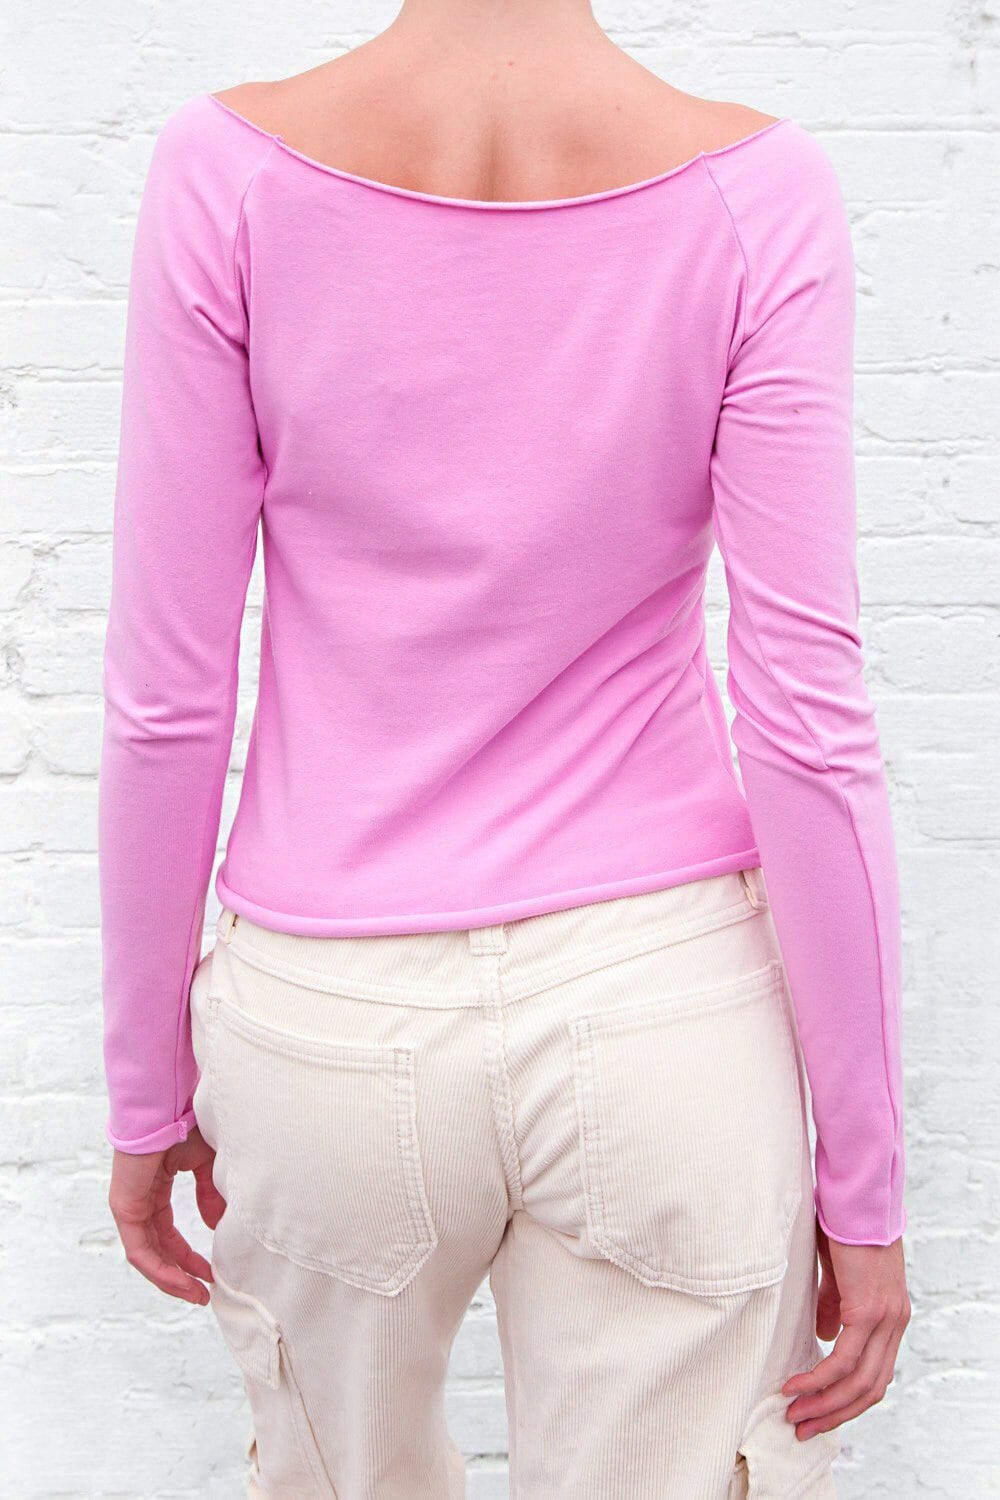 Bonny Top - One Shoulder Crop Top in Pink